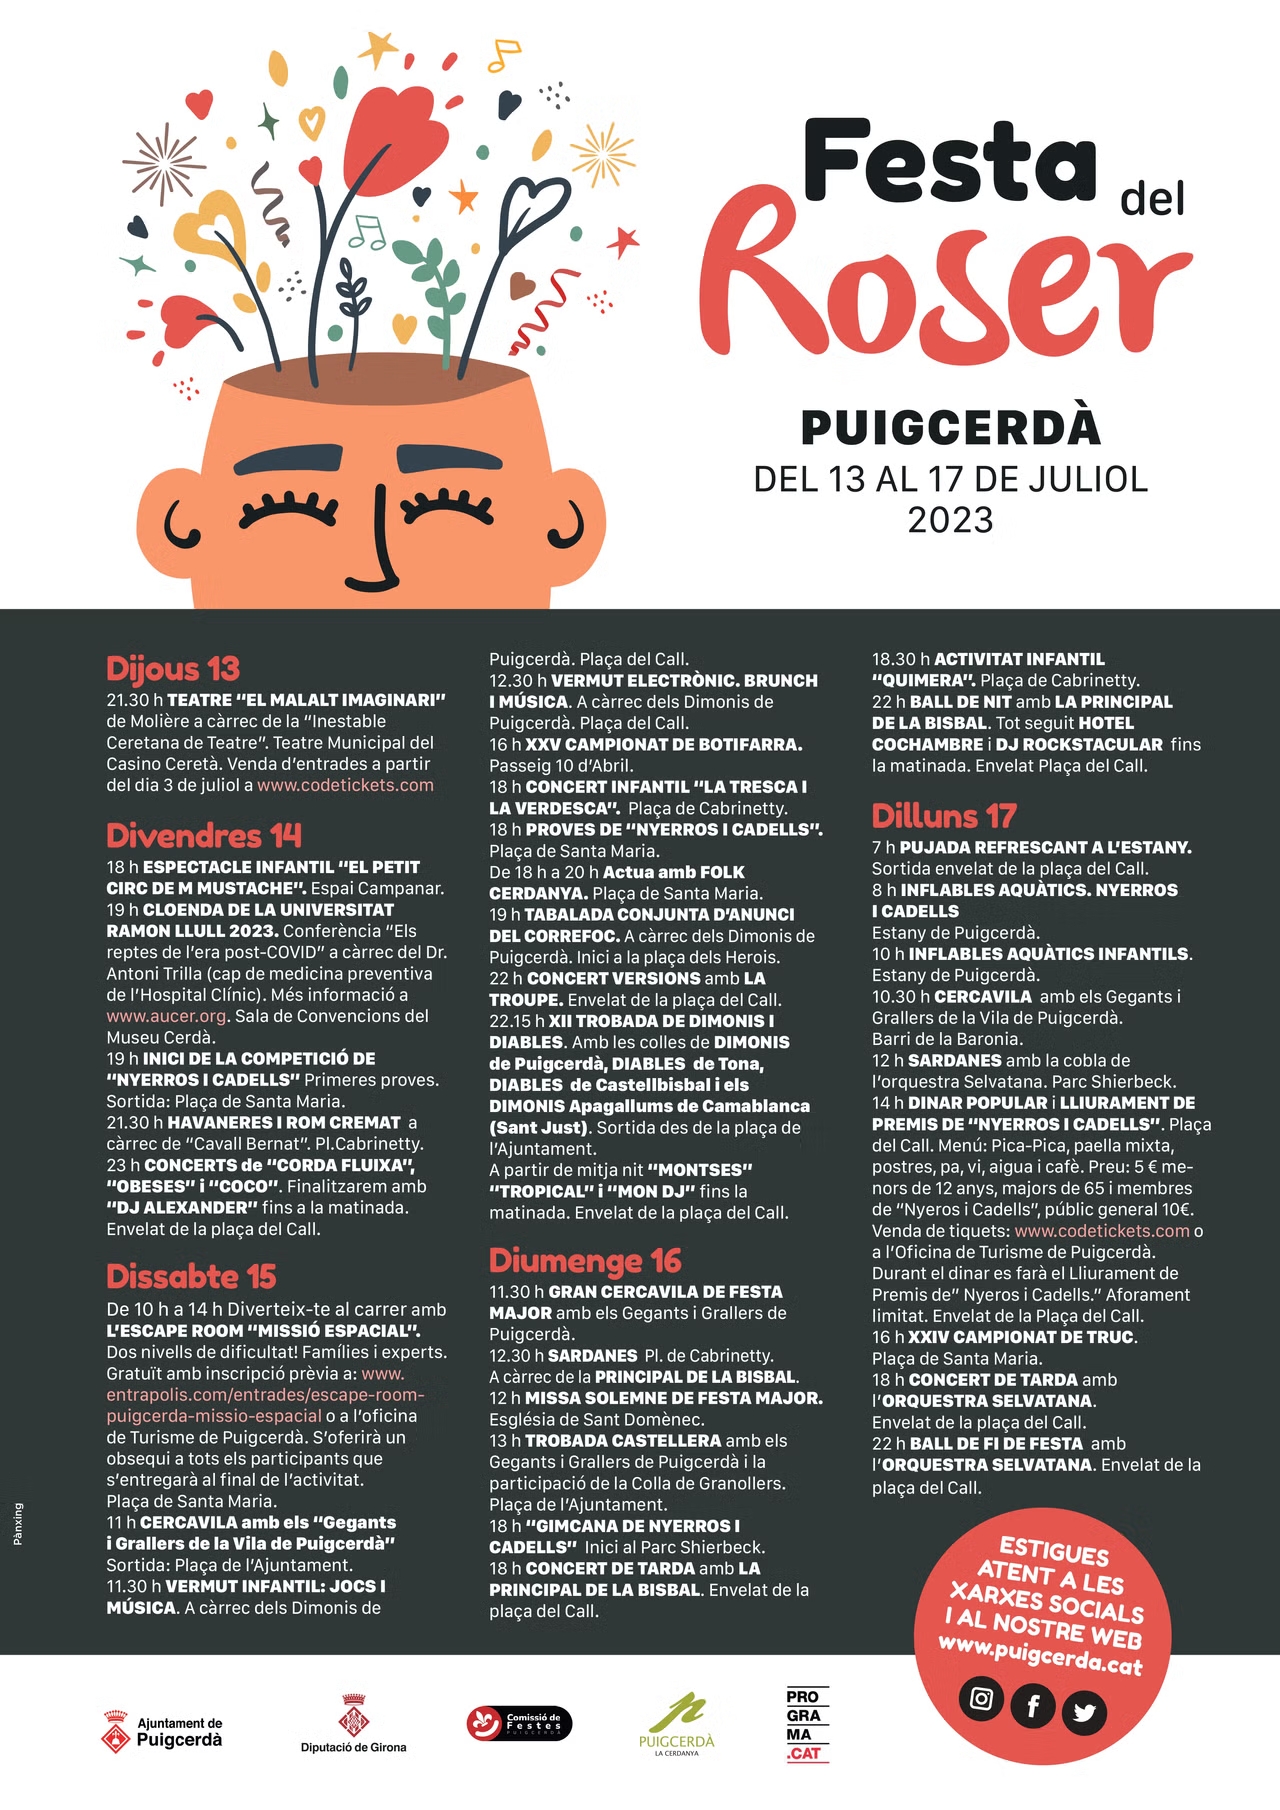 Festa del Roser de Puigcerdà 2023